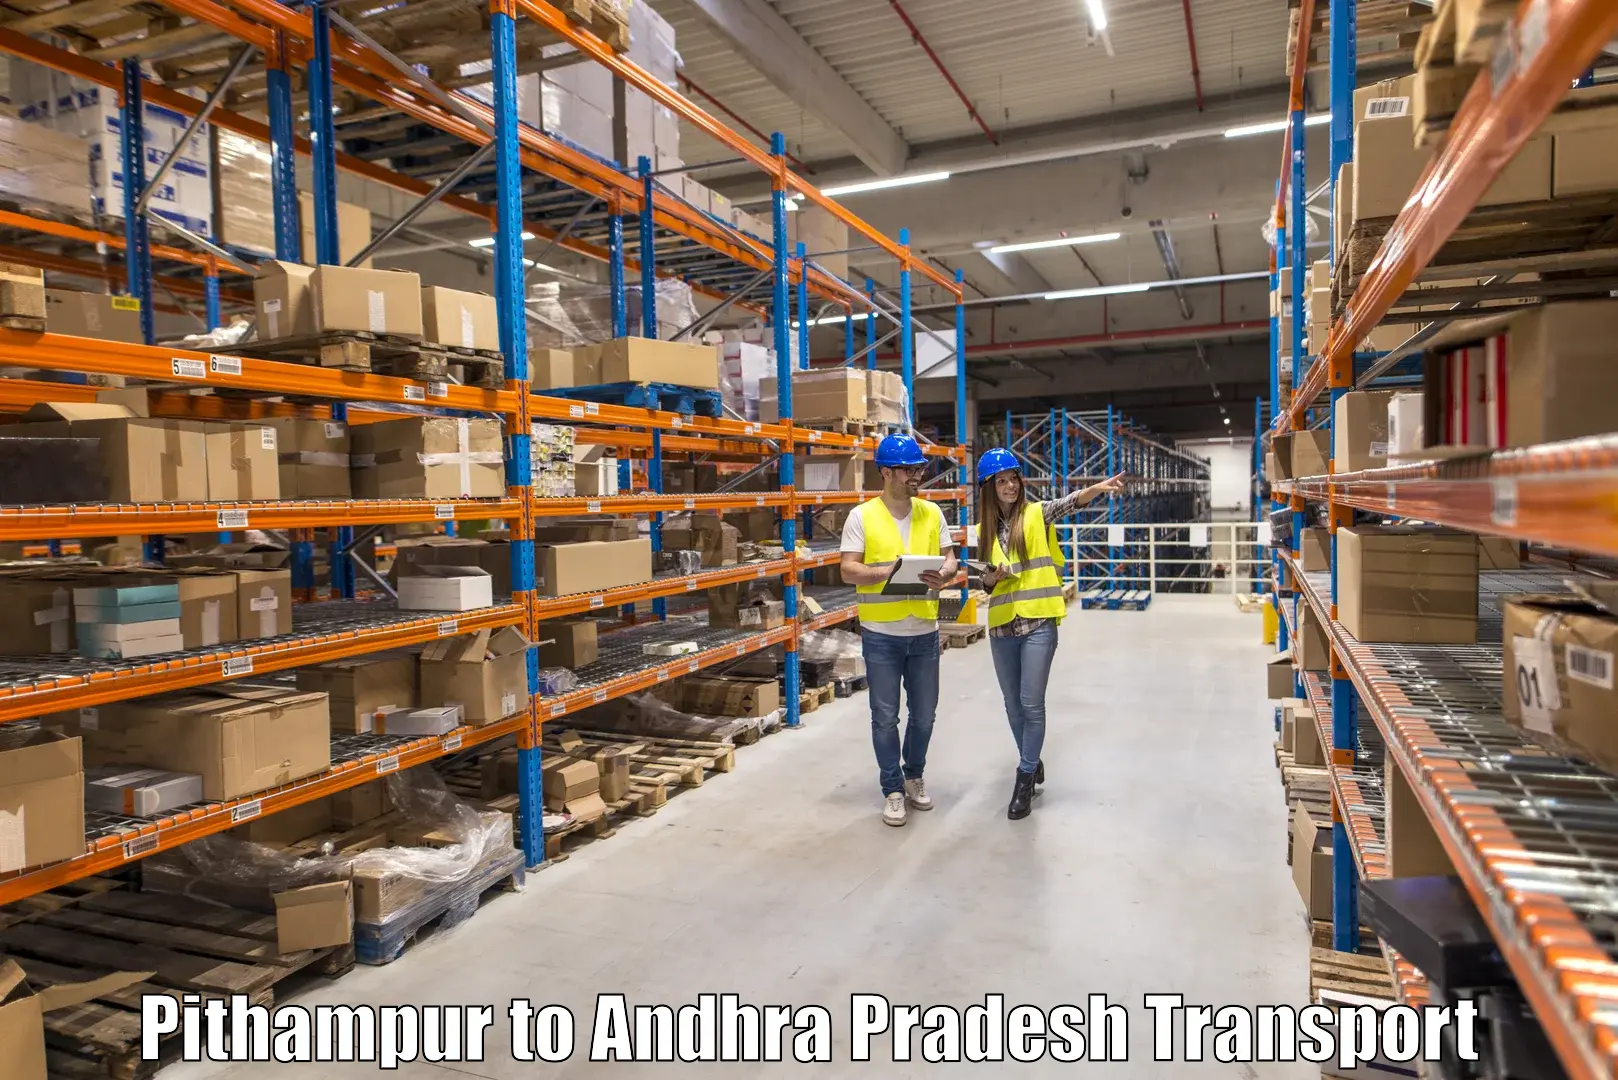 Vehicle transport services in Pithampur to B Kothakota